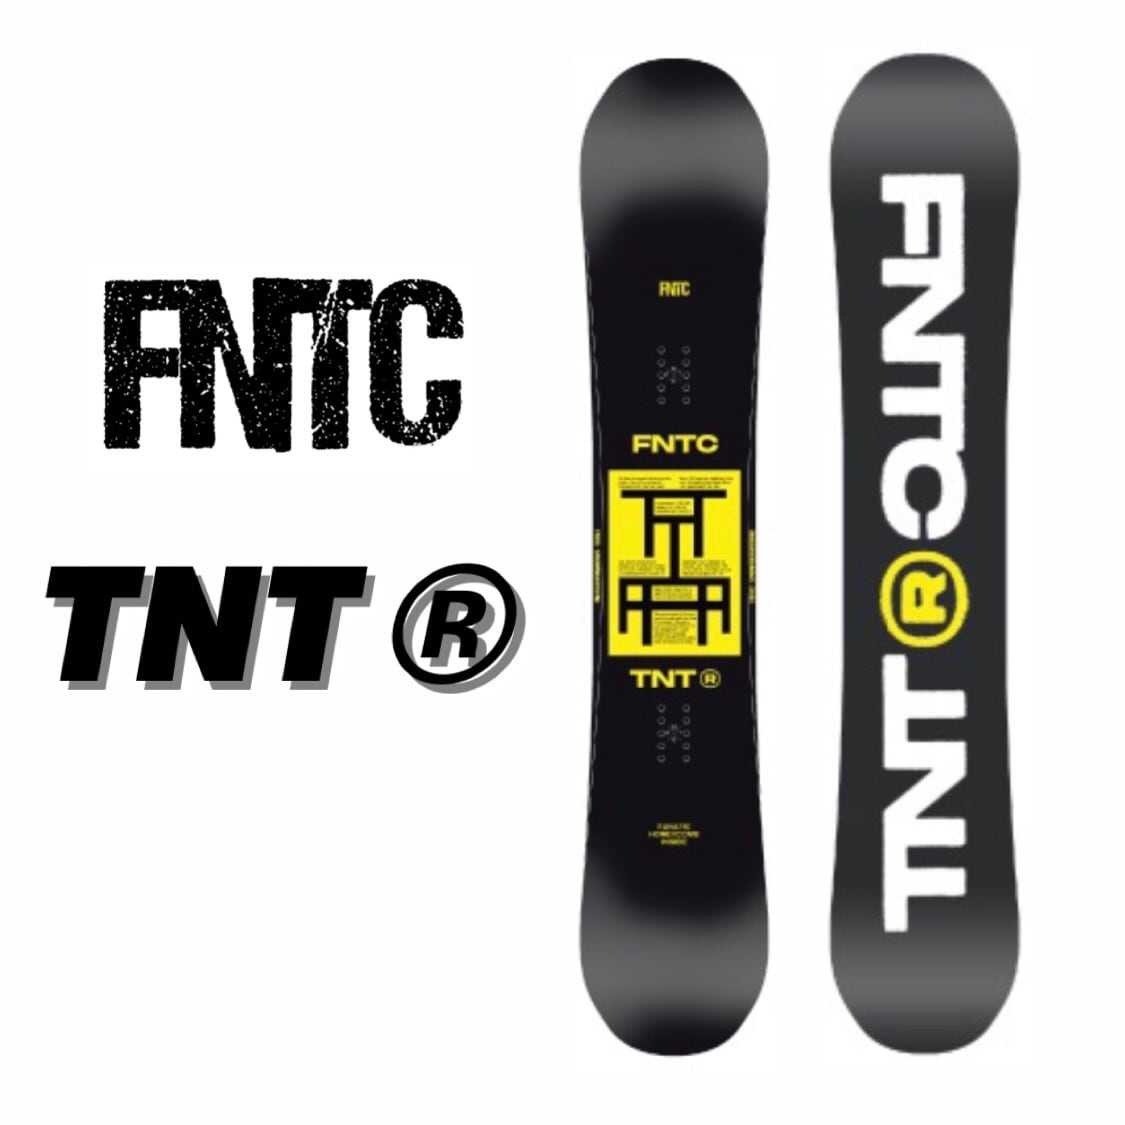 FNTC TNT R グラトリ 22-23 リンクビンディングセット